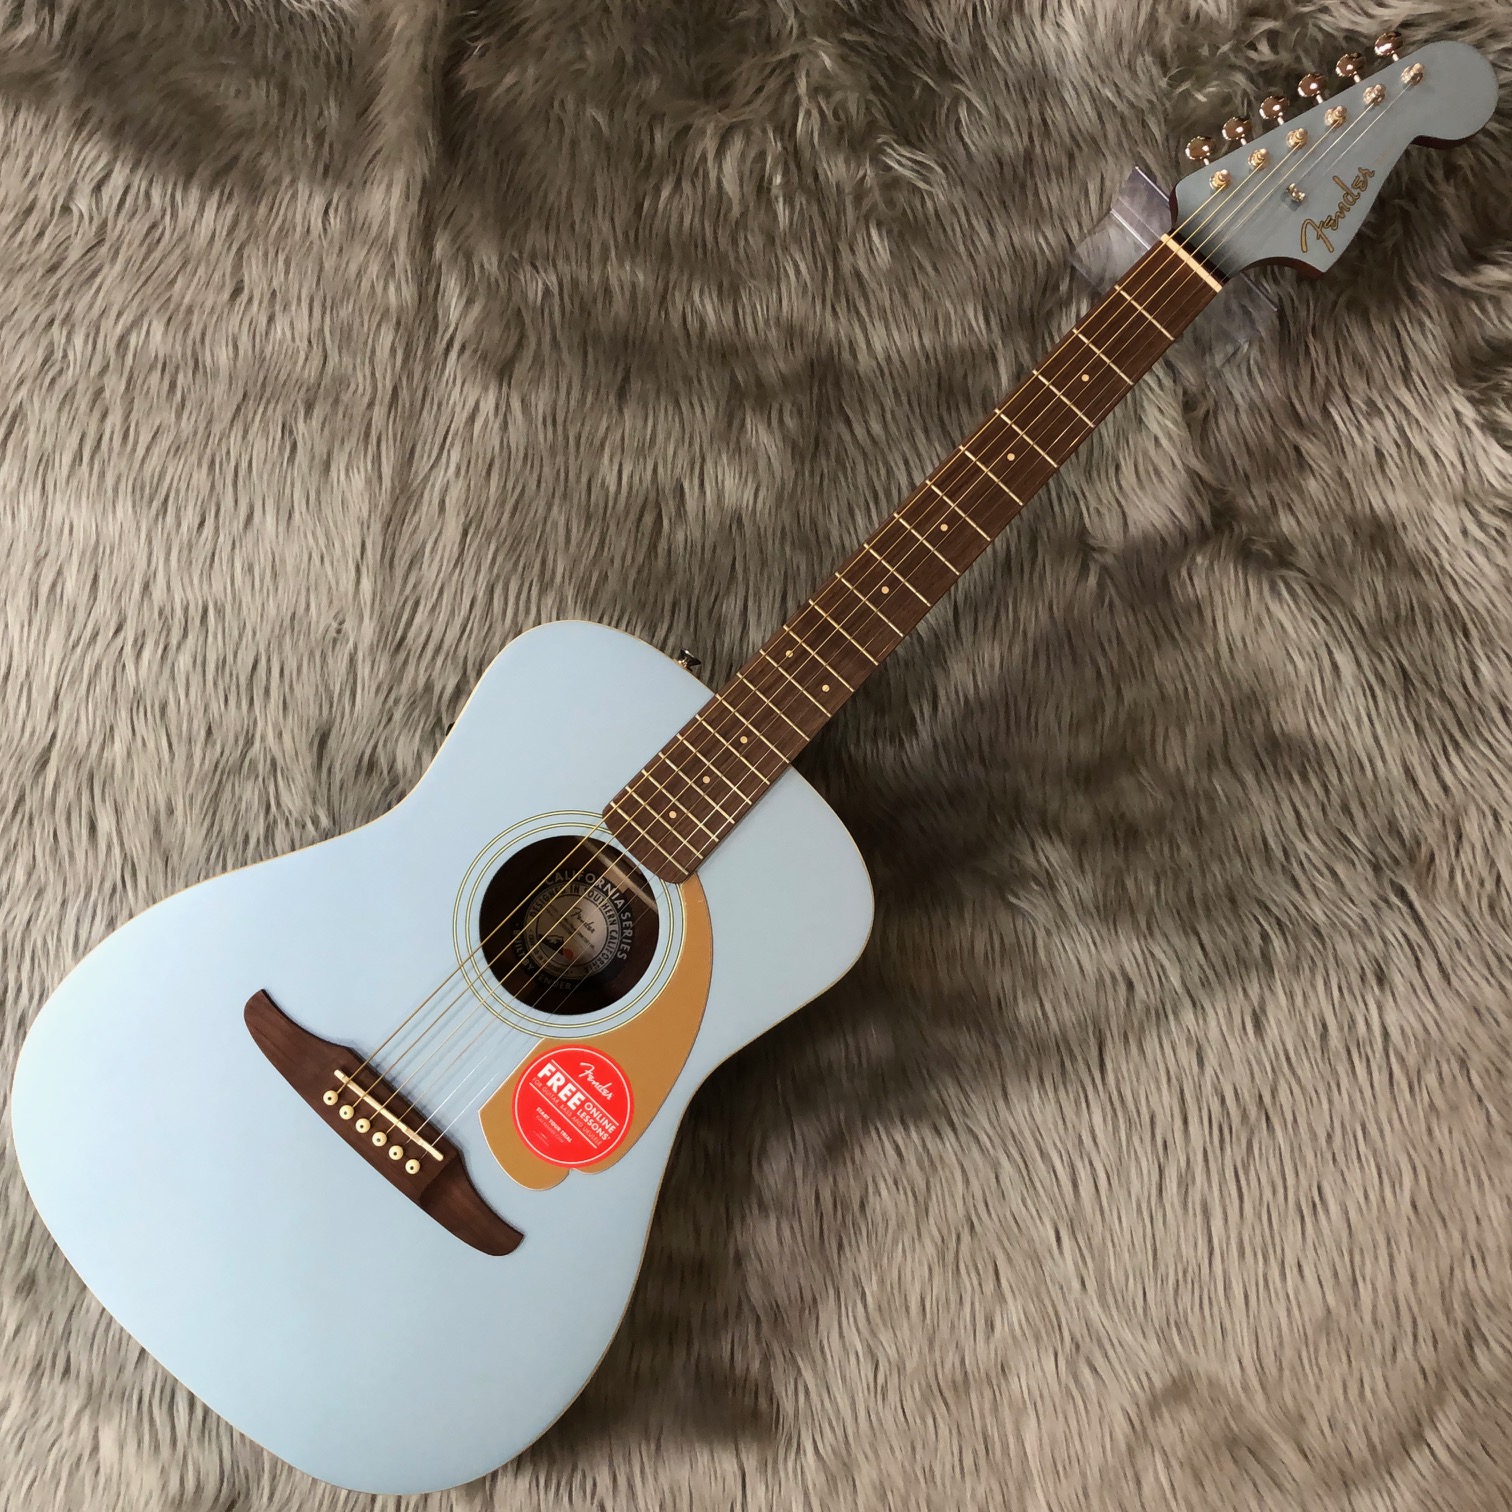 珍しい Fender アコースティックギター 3broadwaybistro.com